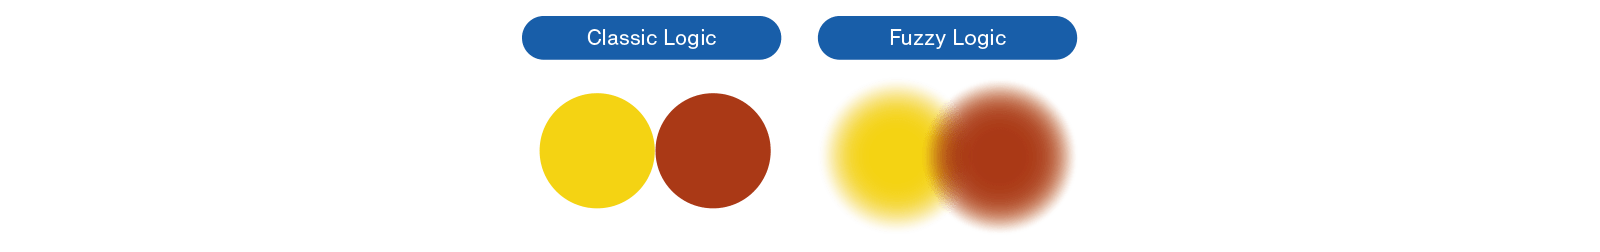 Forskjellen mellom klassisk logikk og fuzzy logikk